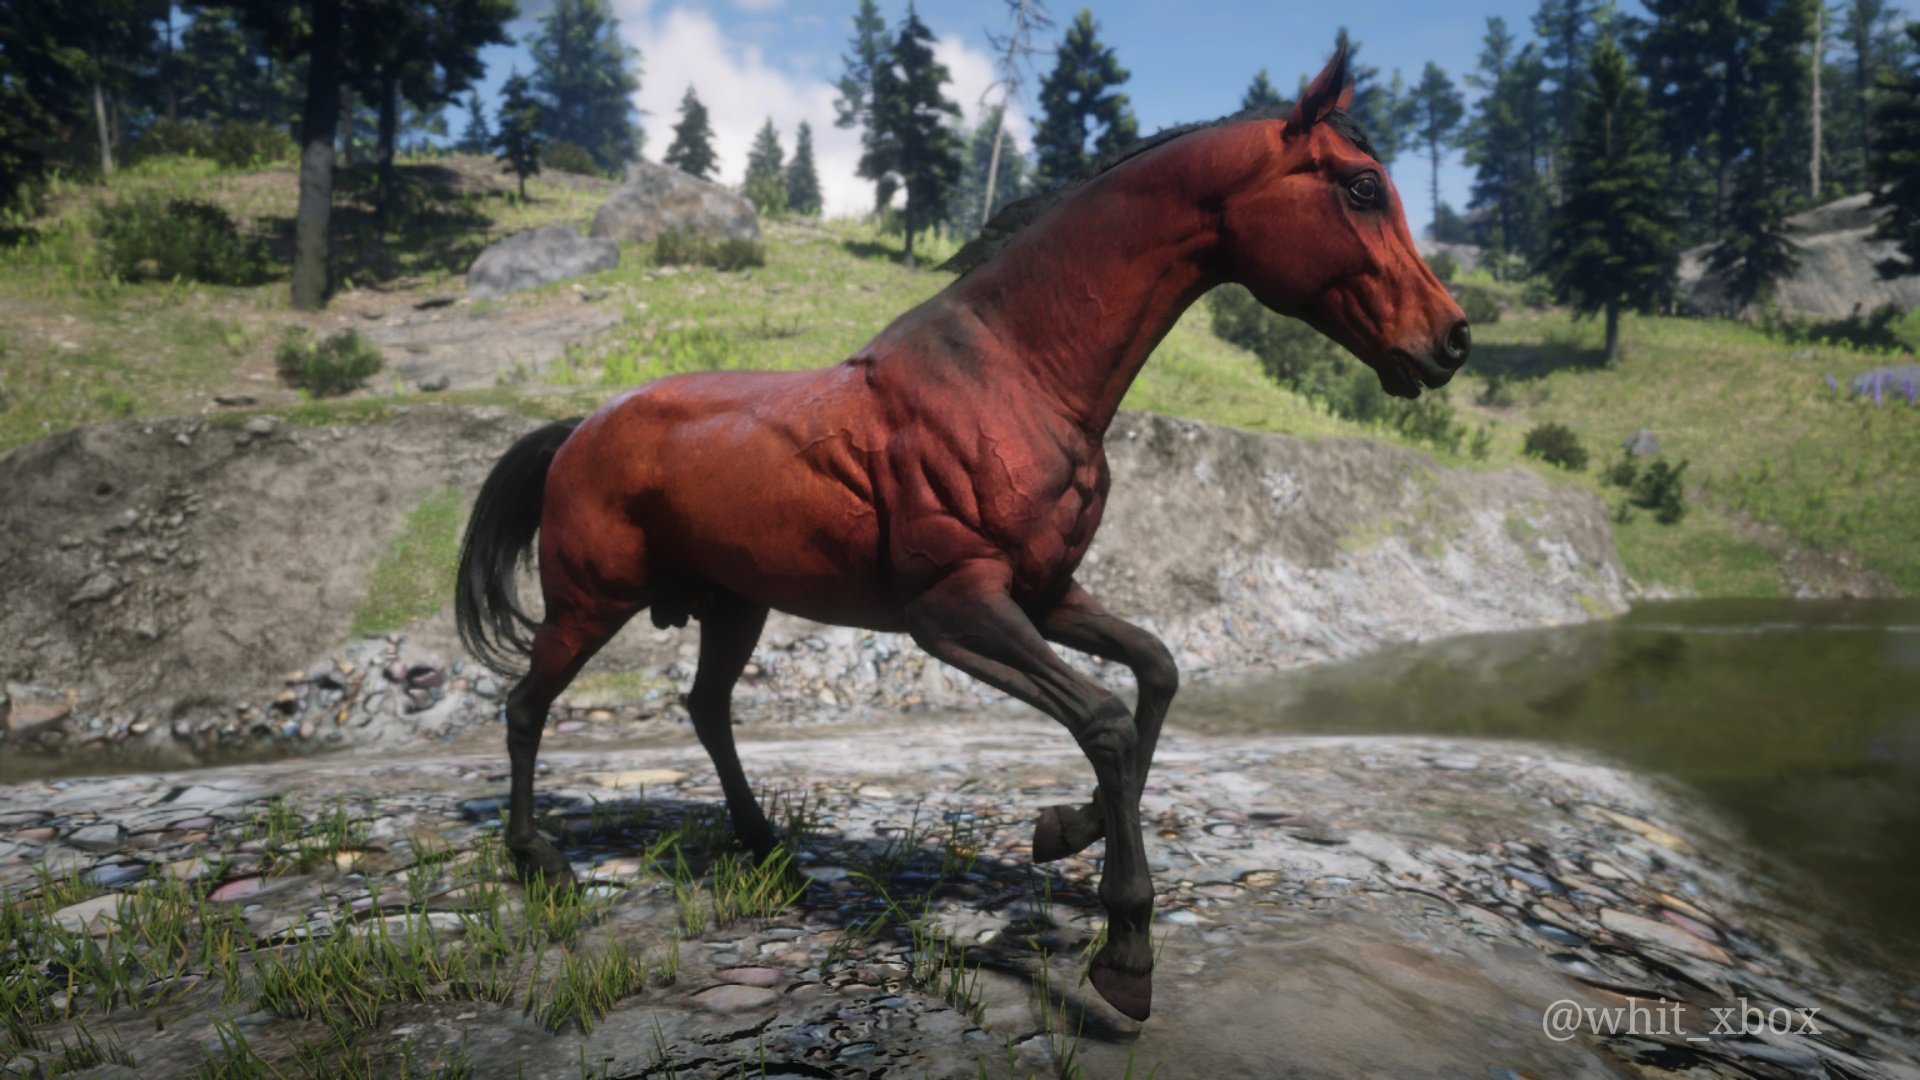 Twitter 上的Whit："Red chestnut Arabian. #photomode #rdr2horses #xboxone https://t.co/LphdXvtm7u" / Twitter